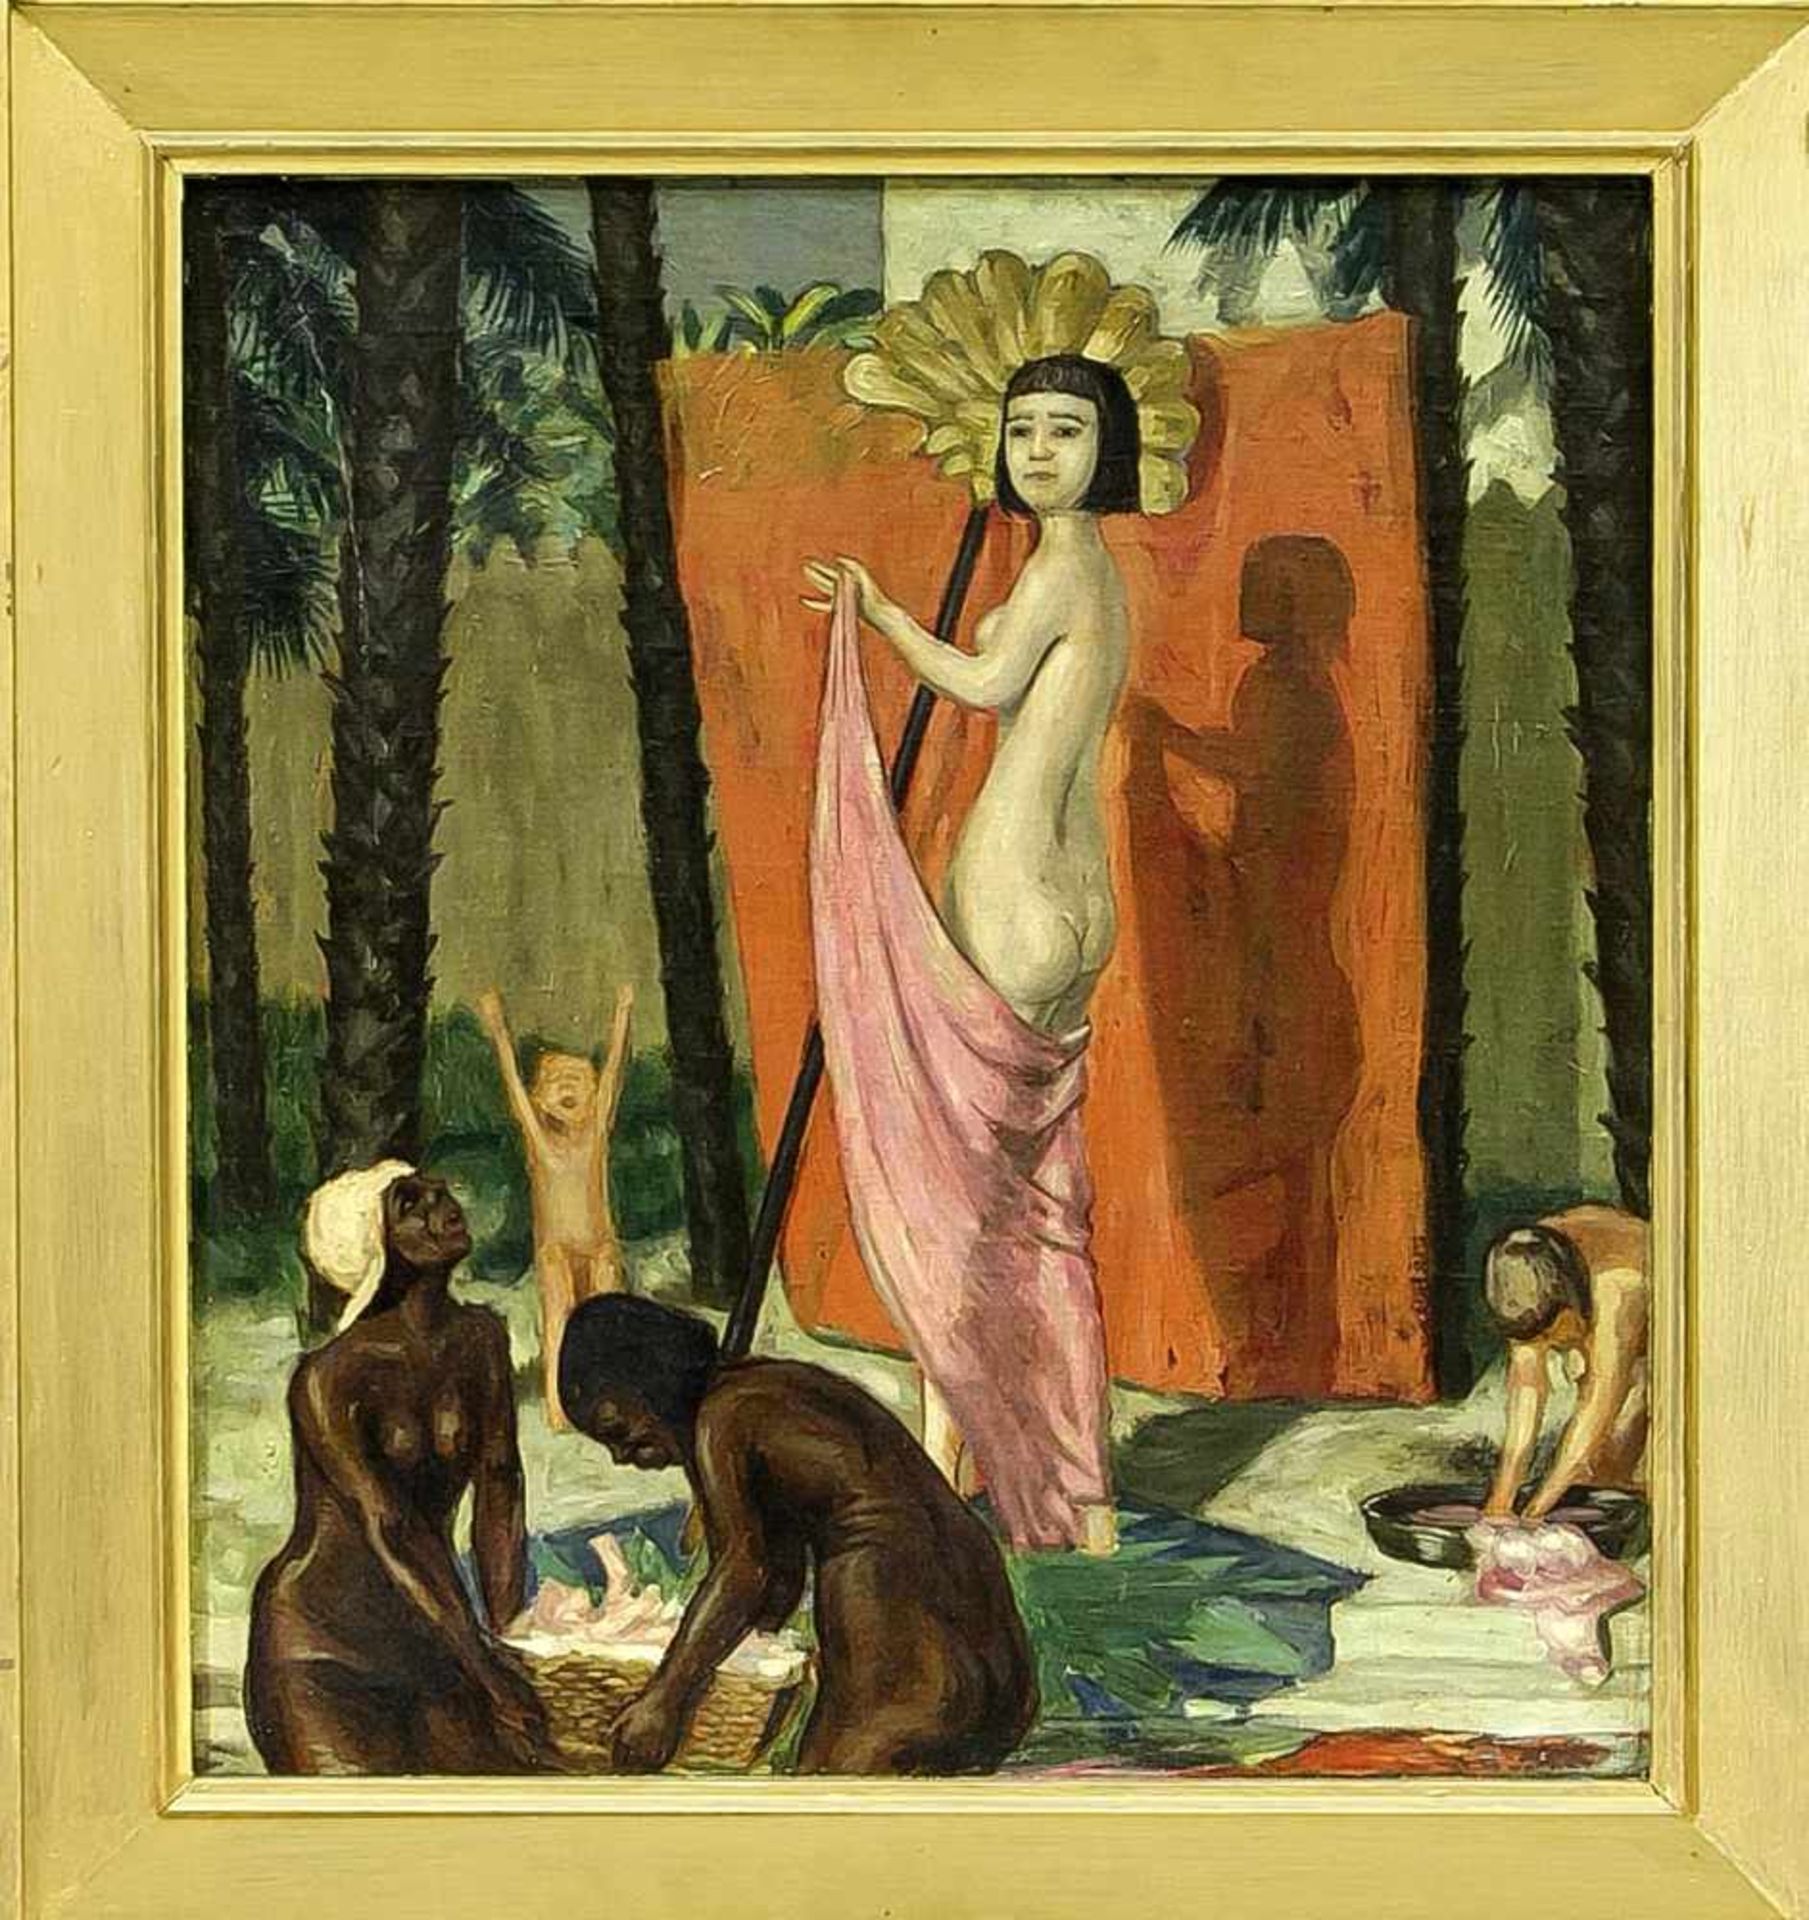 Anonymer Maler um 1900, exotische Nackte vor einem gespannten roten Tuch nach dem Bade,Öl/Leinwand/